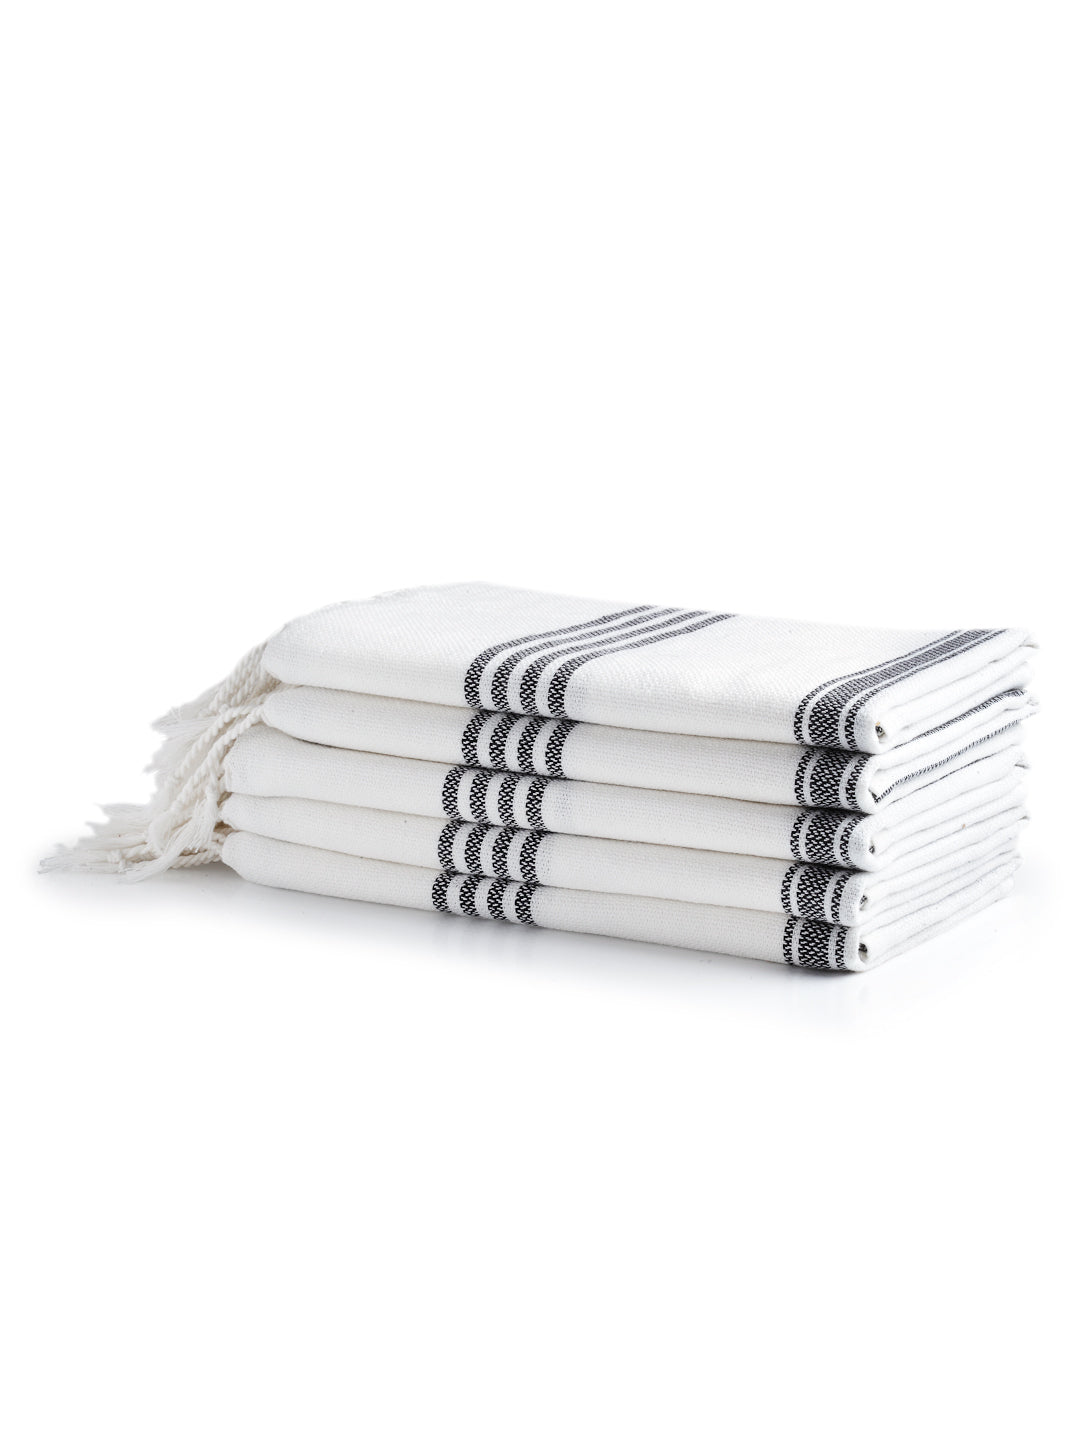 Arrabi Black Solid Handwoven Cotton Hand Towel (Set of 5) (90 X 35 cm)